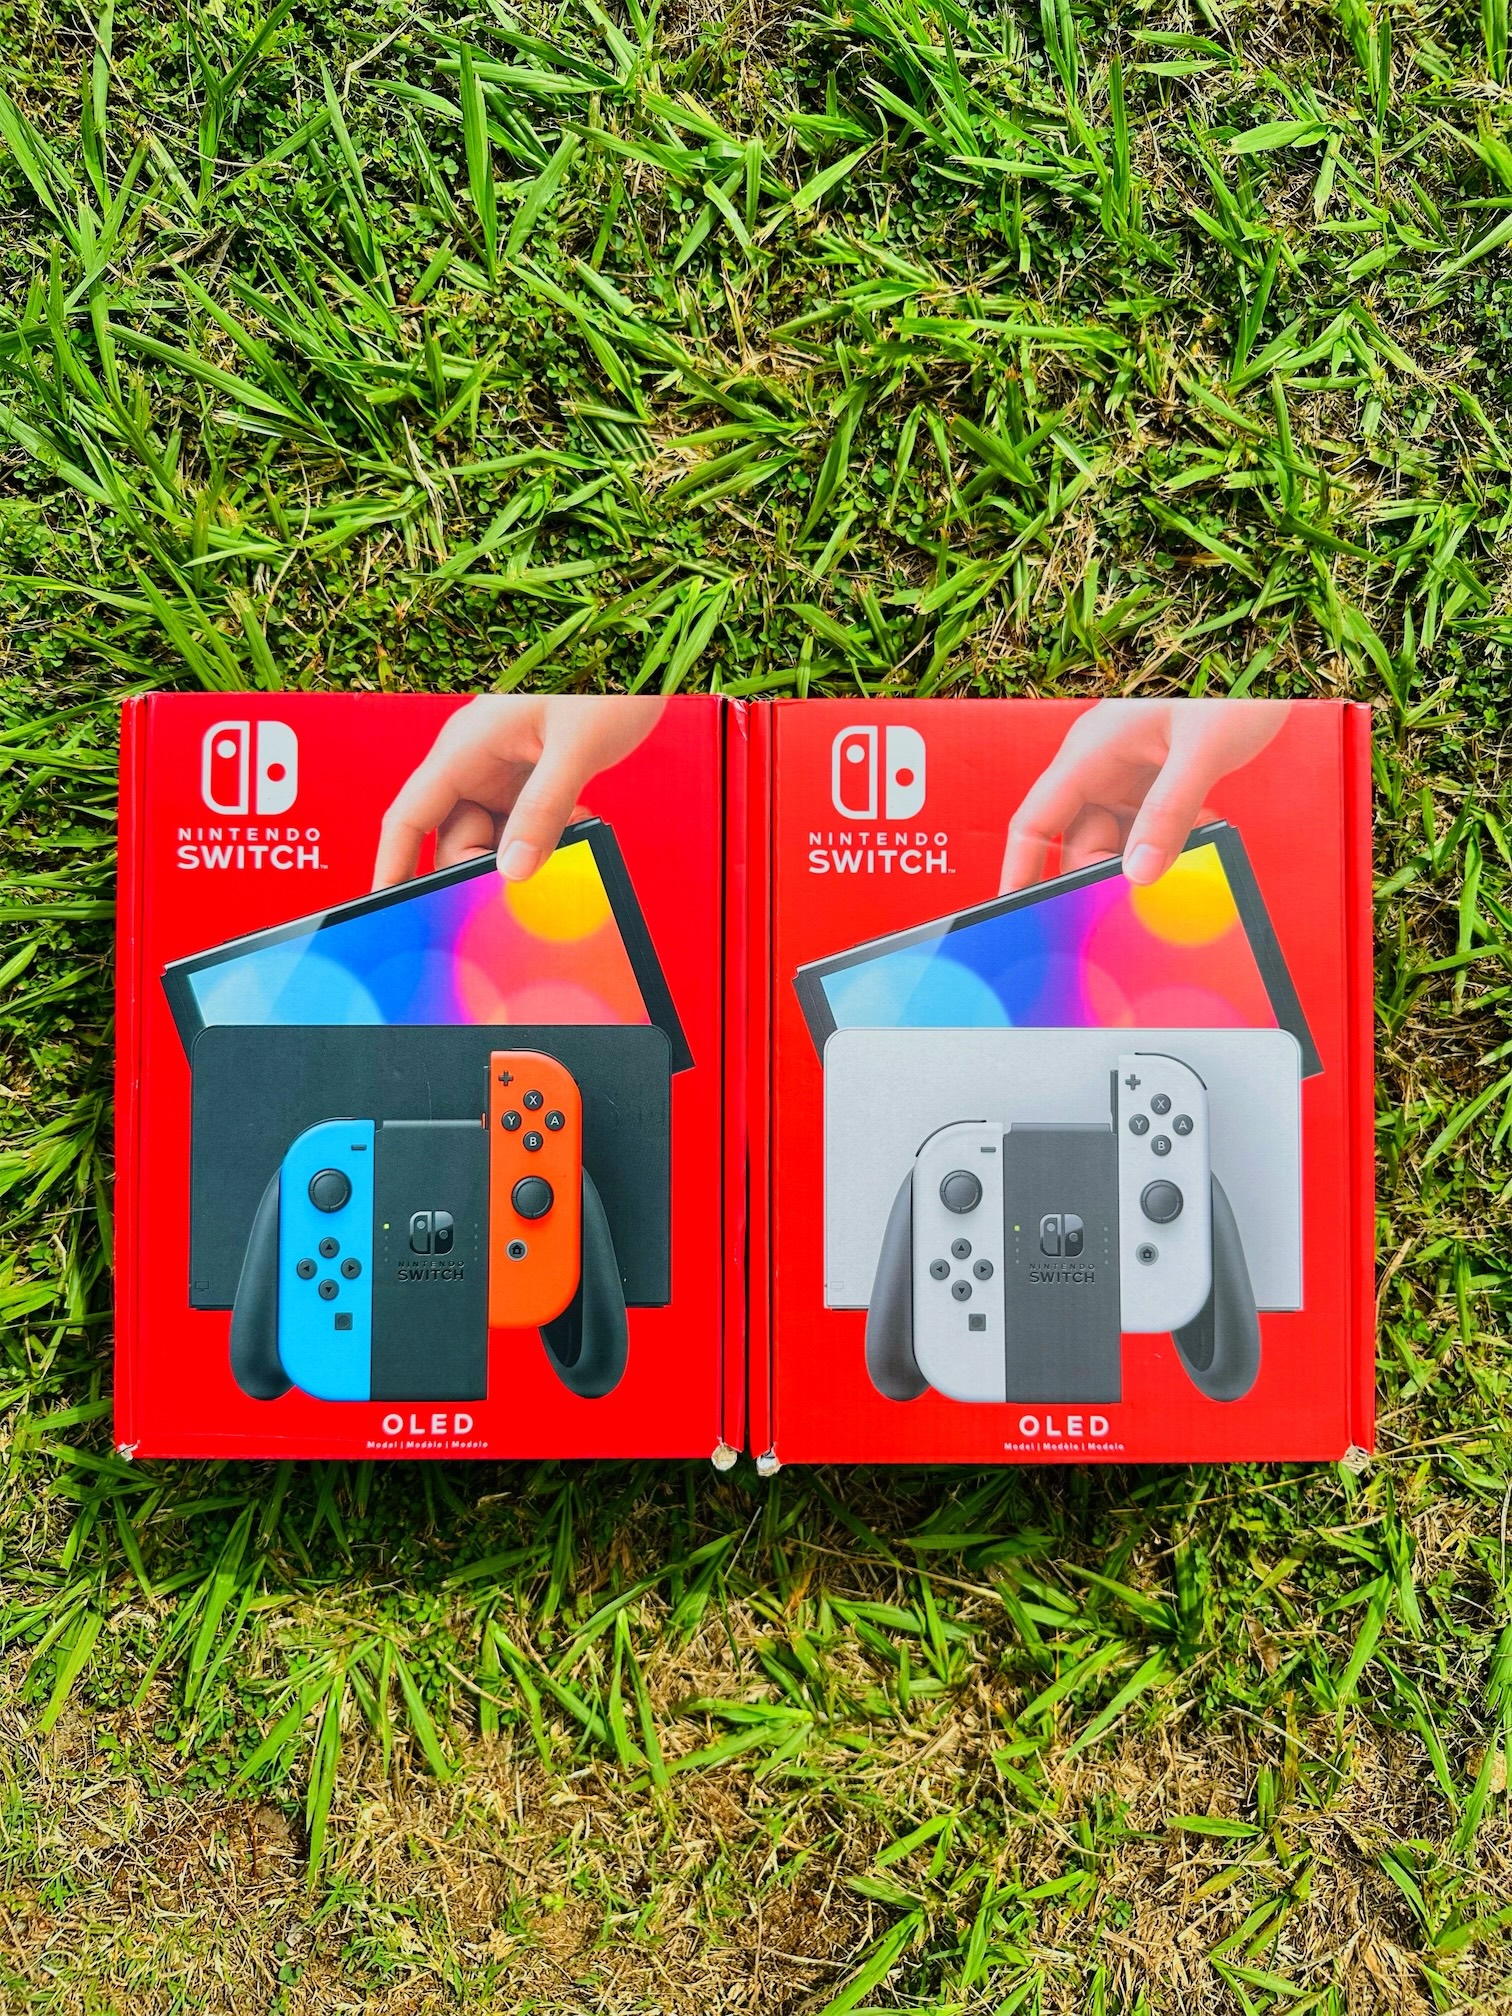 consolas y videojuegos - Nintendo Switch Oled sellados